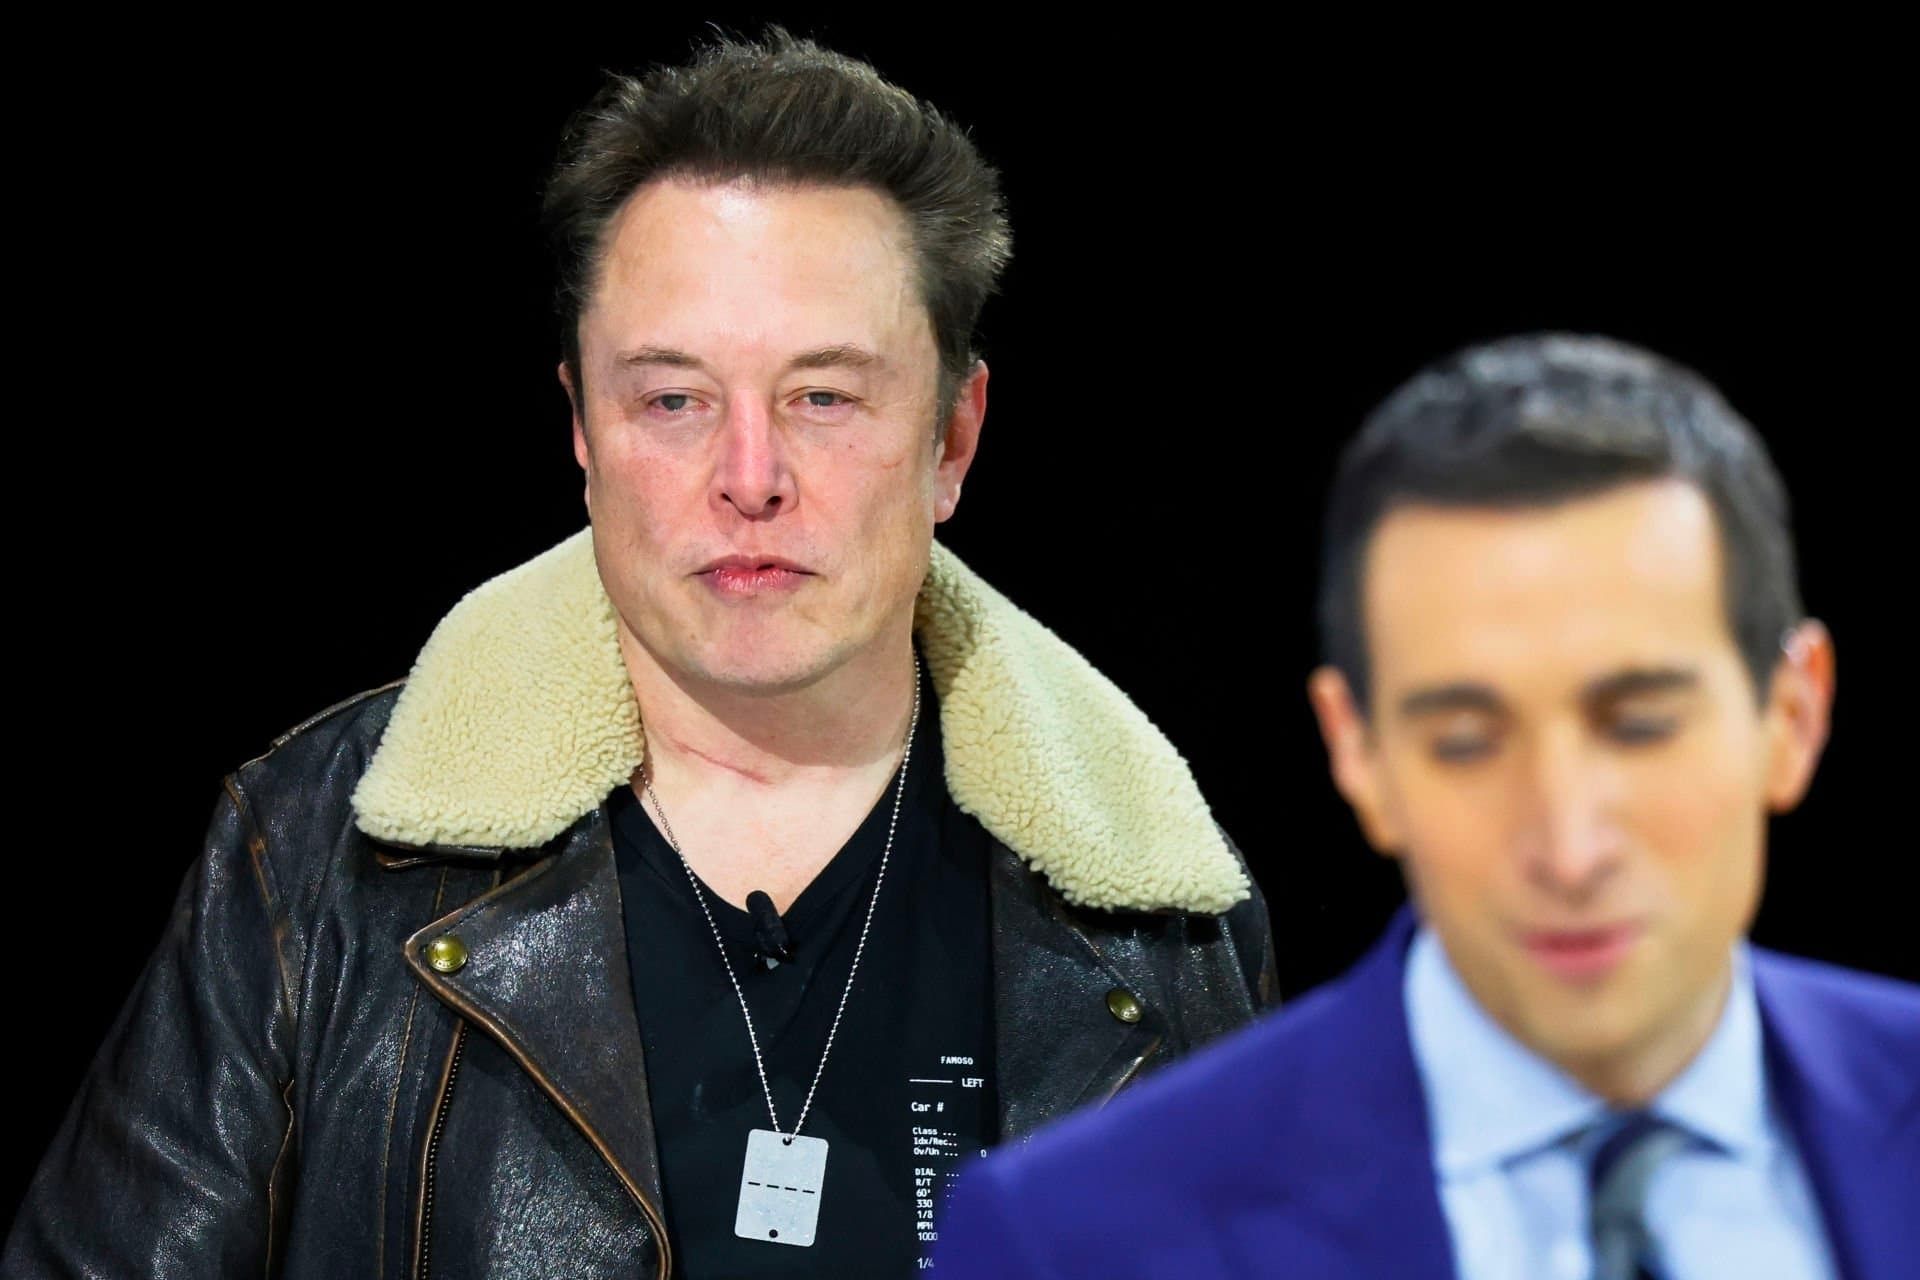 چهره درهم و عصبانی ایلان ماسک / Elon Musk با کت مشکی